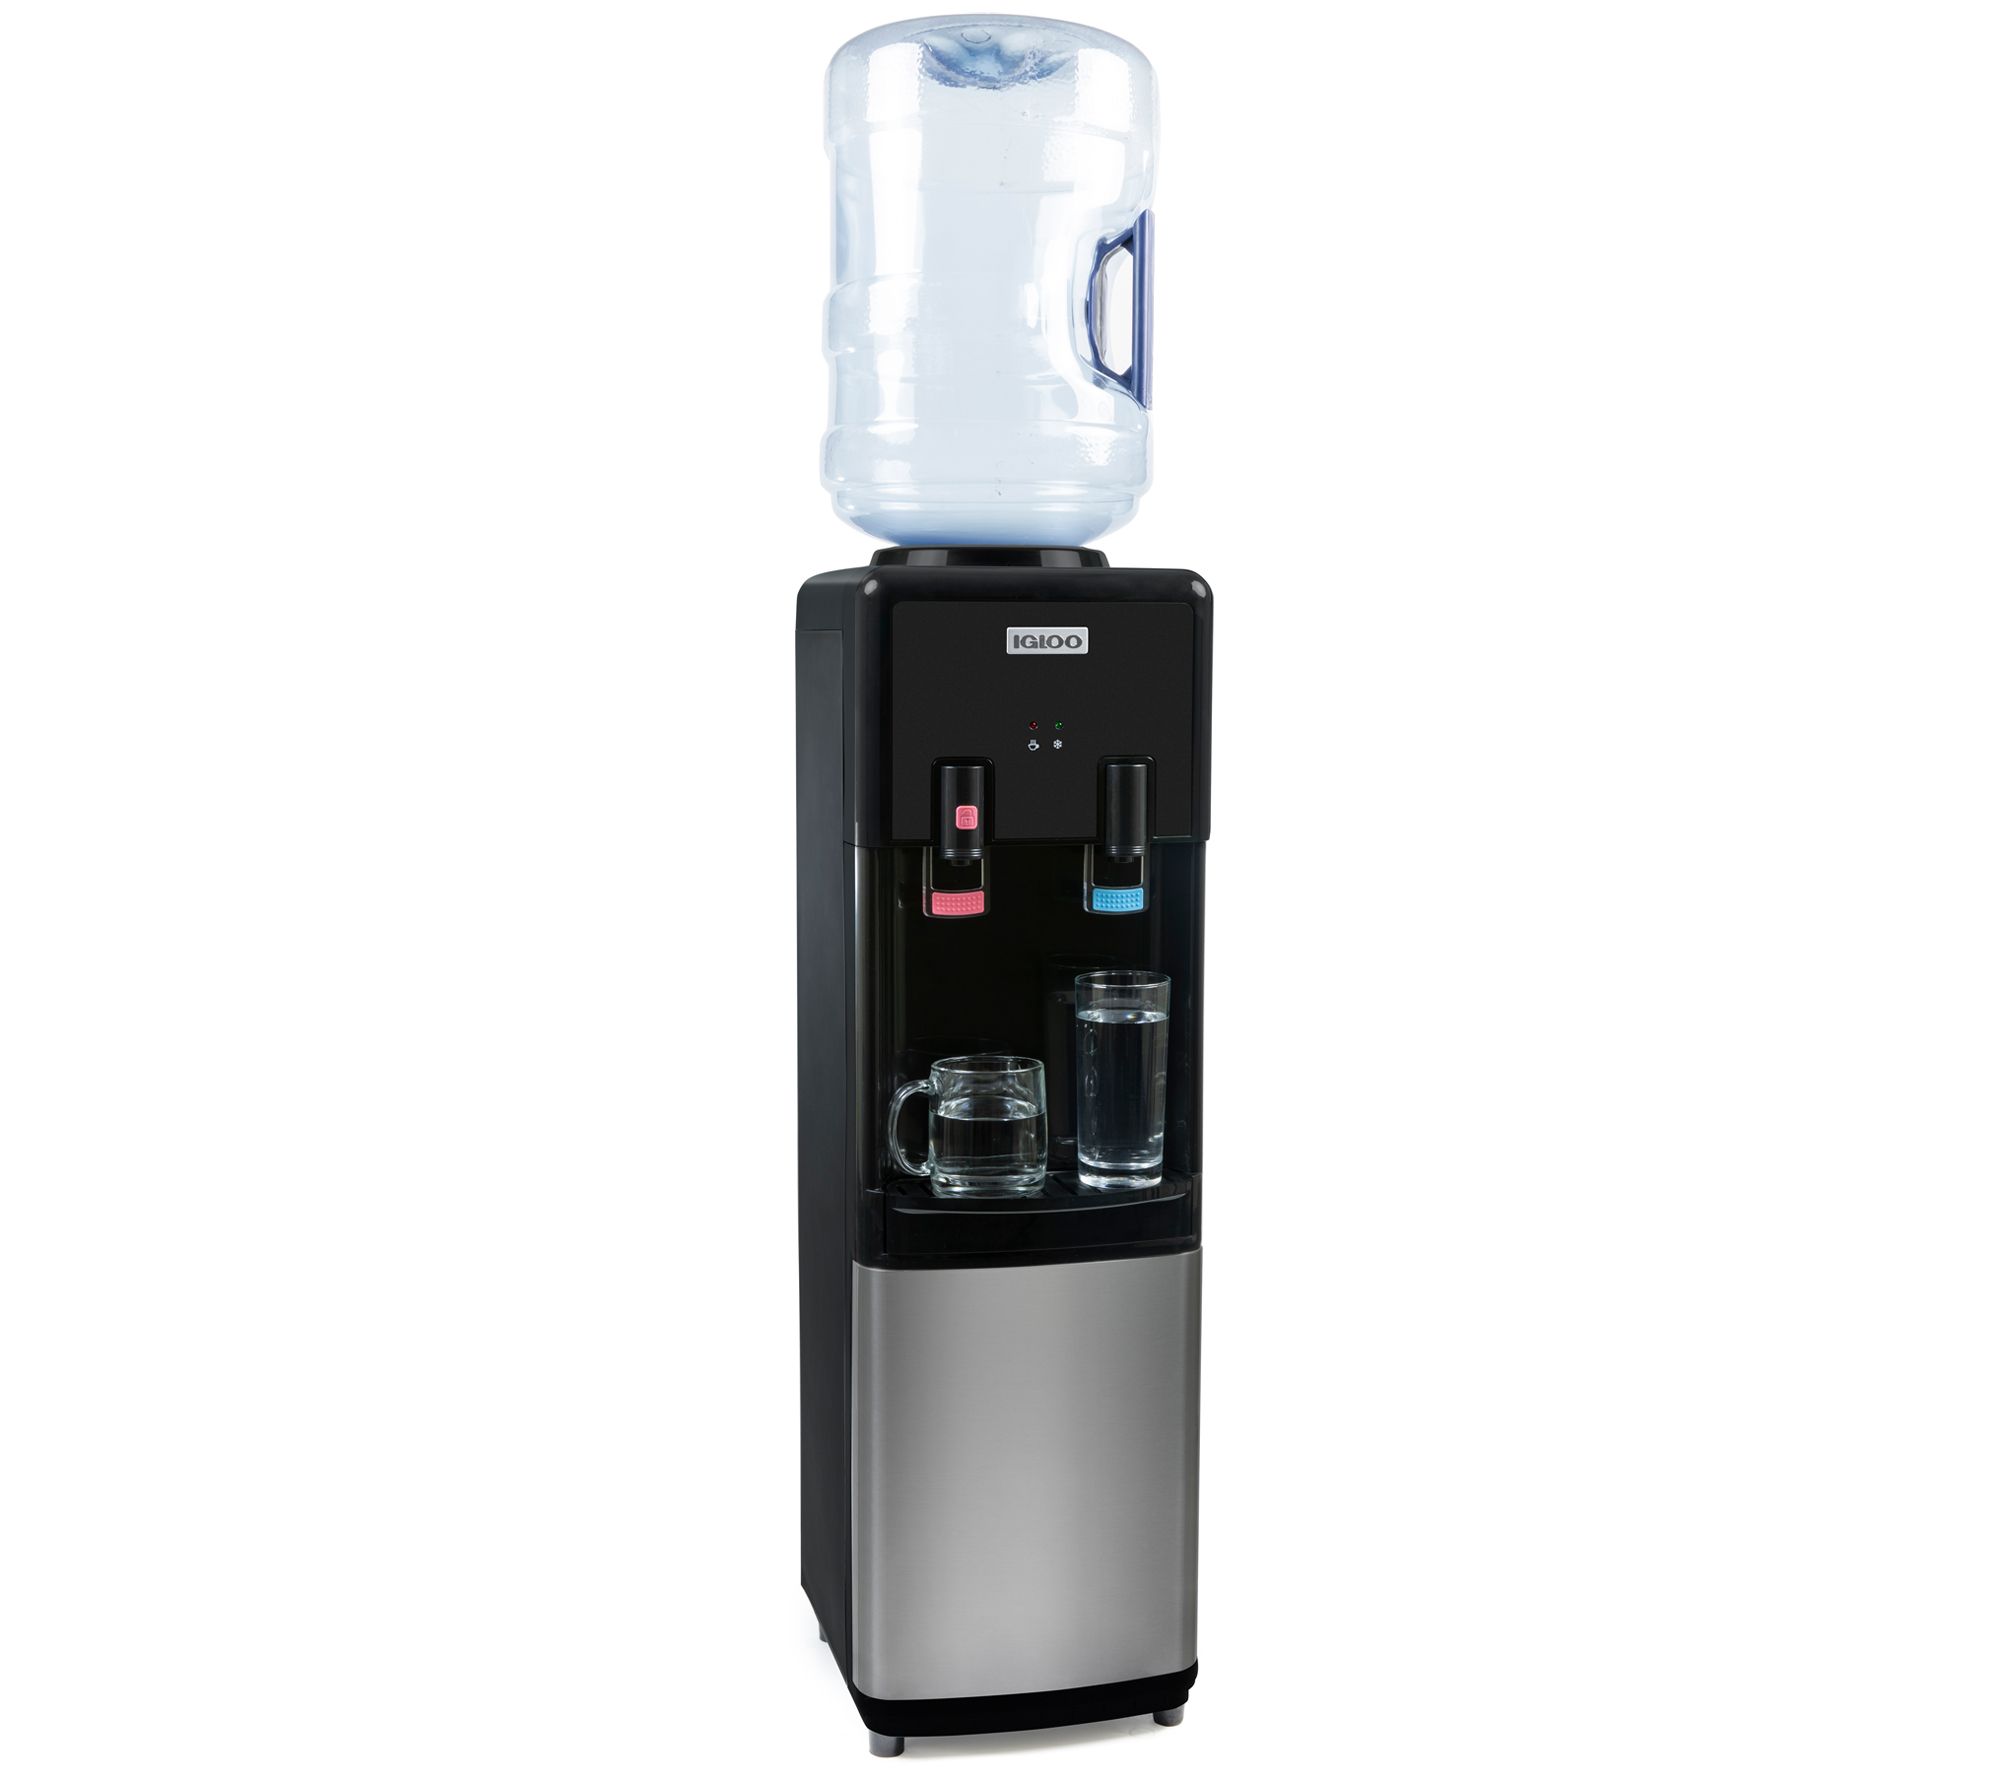 13L Hot Beverage Dispenser, Hot Drinks / Coffee Dispenser fits